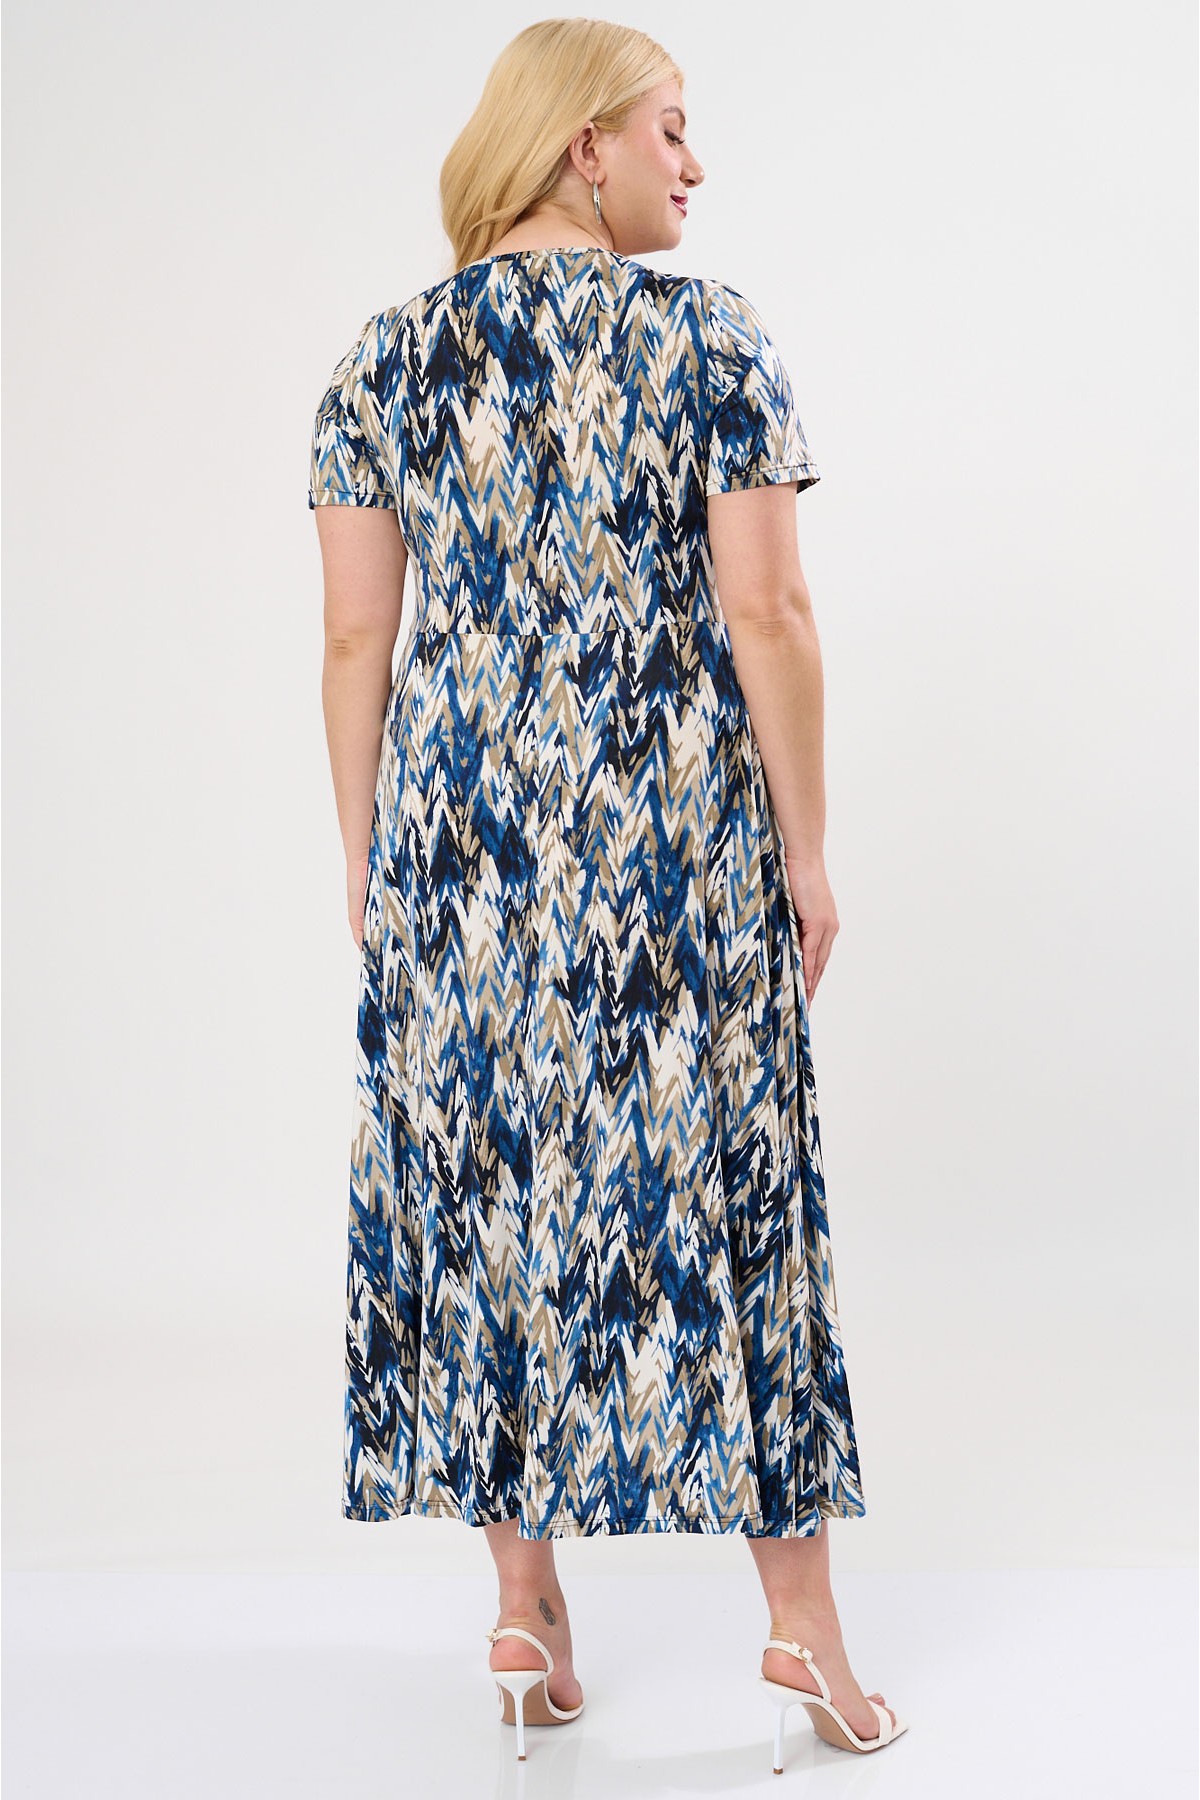 Φόρεμα μάξι κόμπος ψαροκόκαλο μπλε